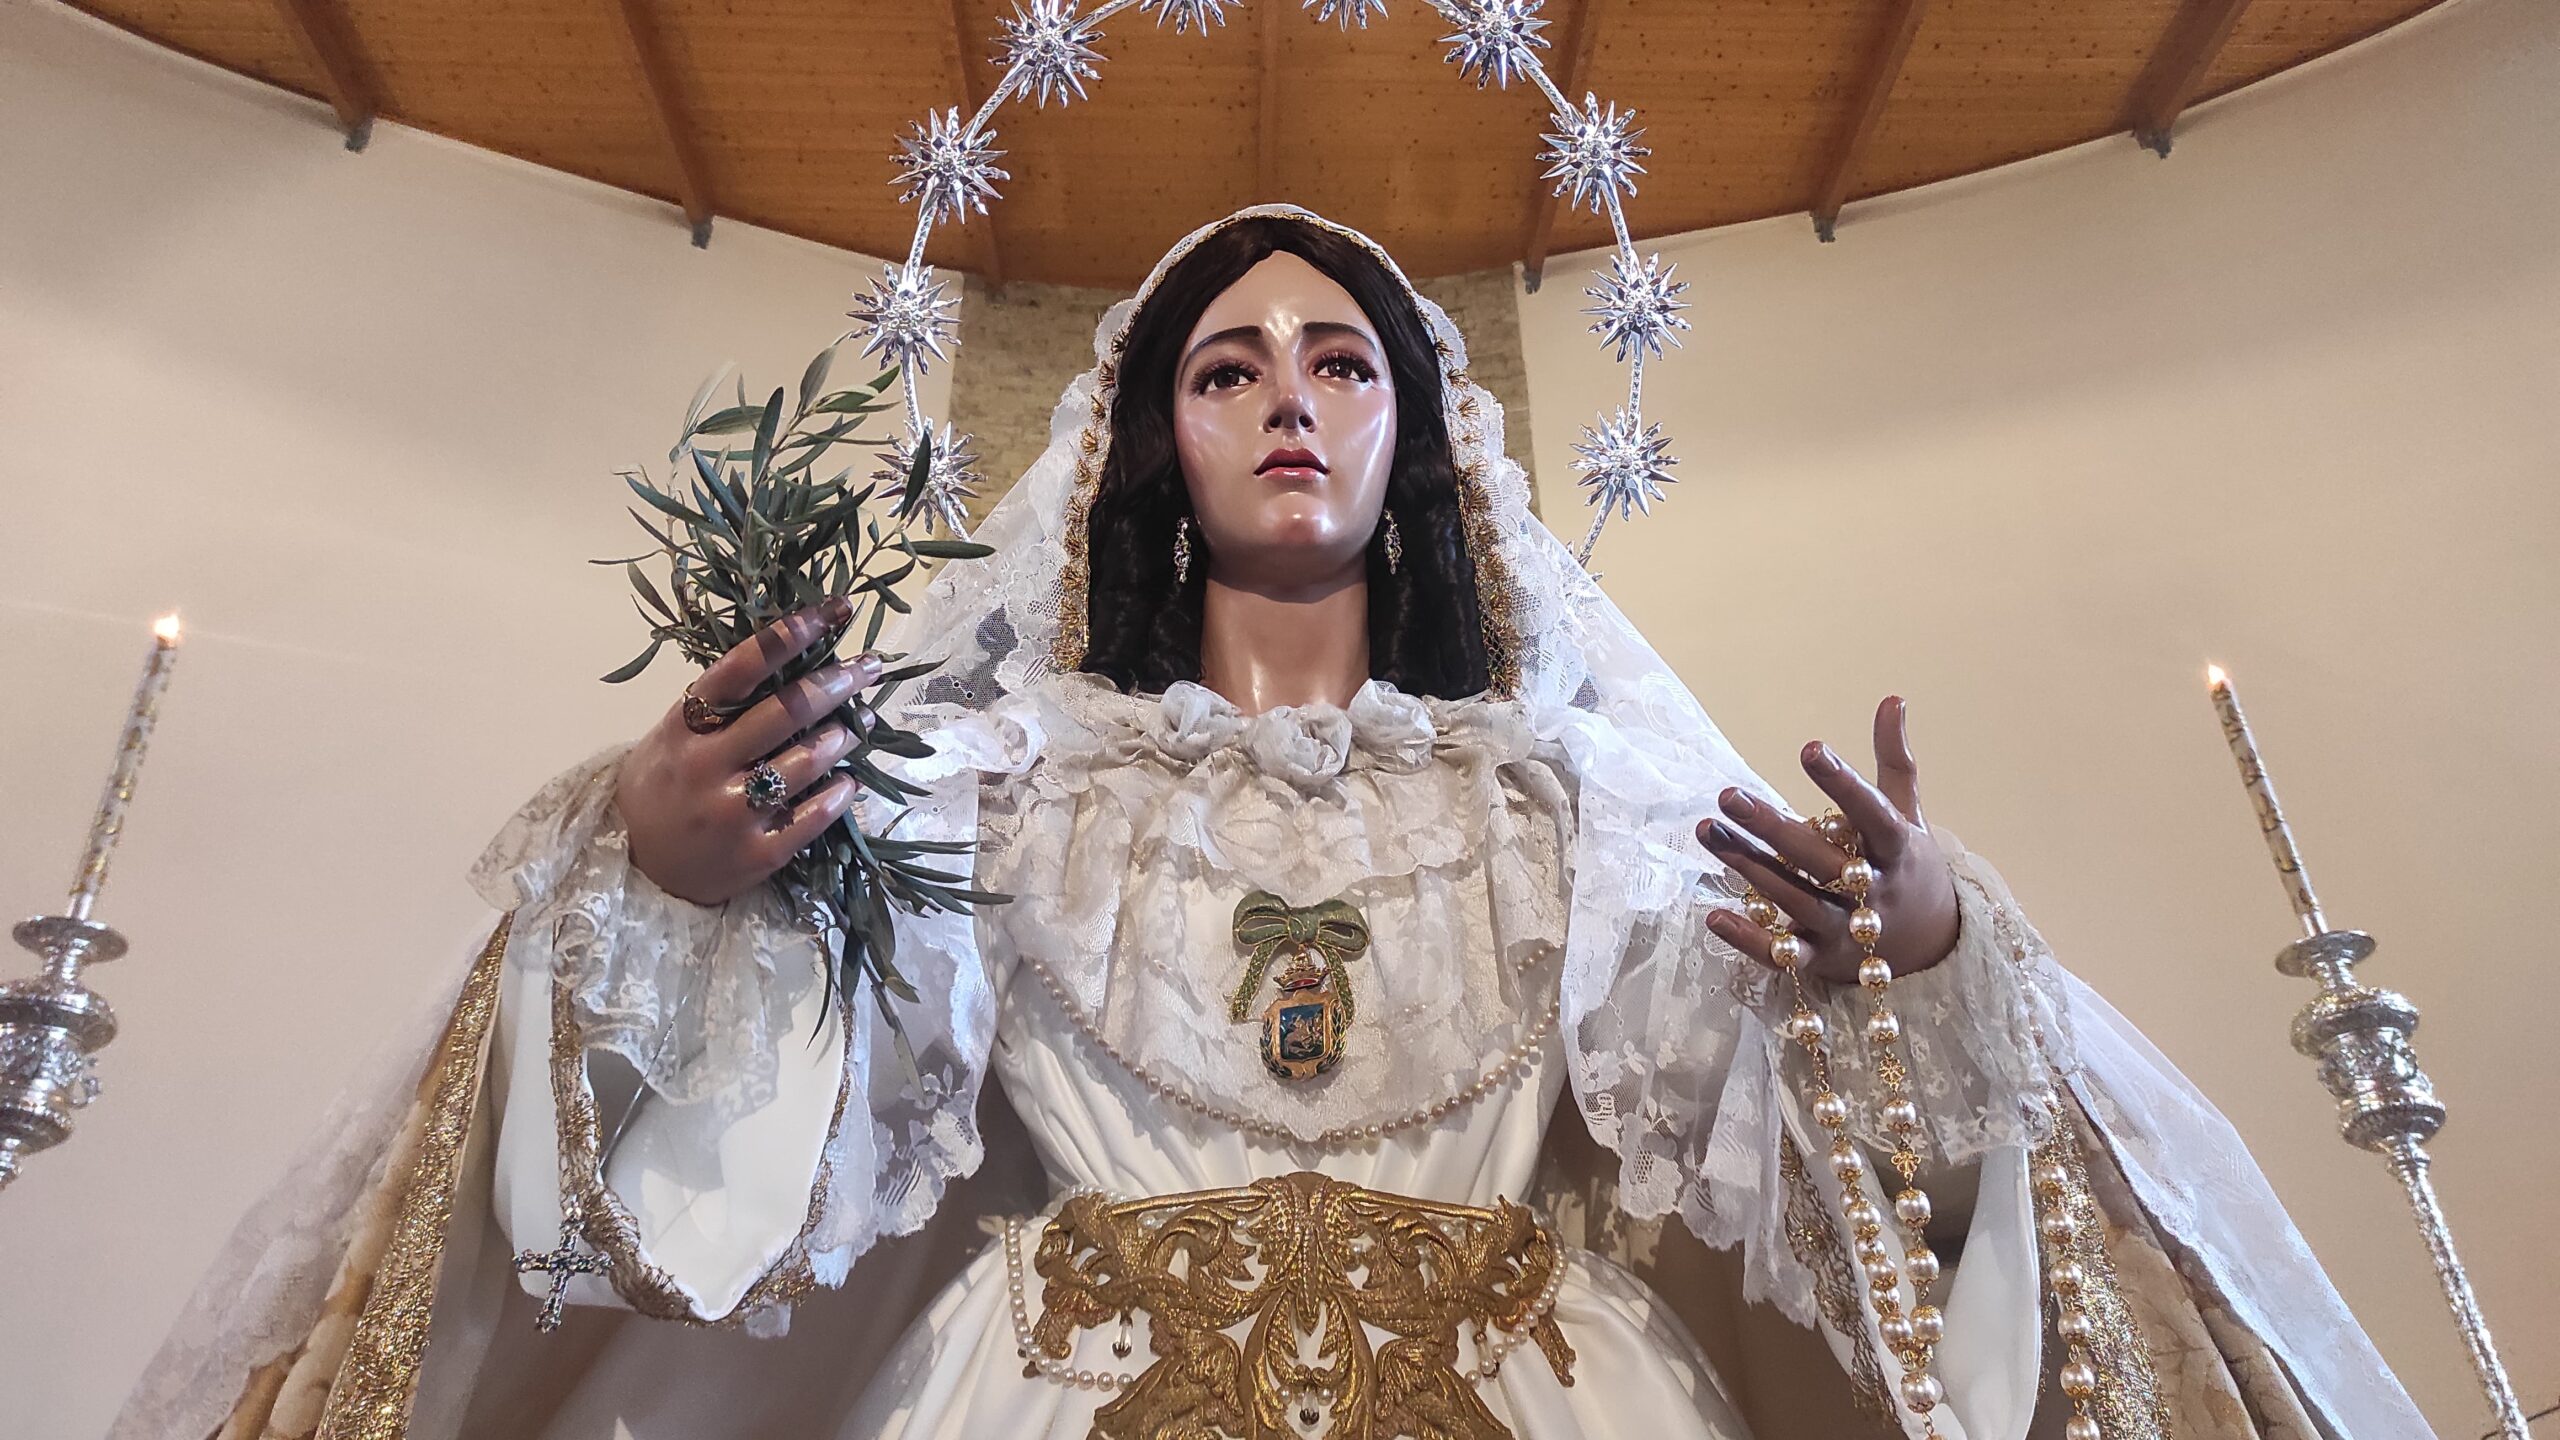 La Virgen del Rocío ya está de vuelta en Vélez-Málaga - AxarquiaPlus